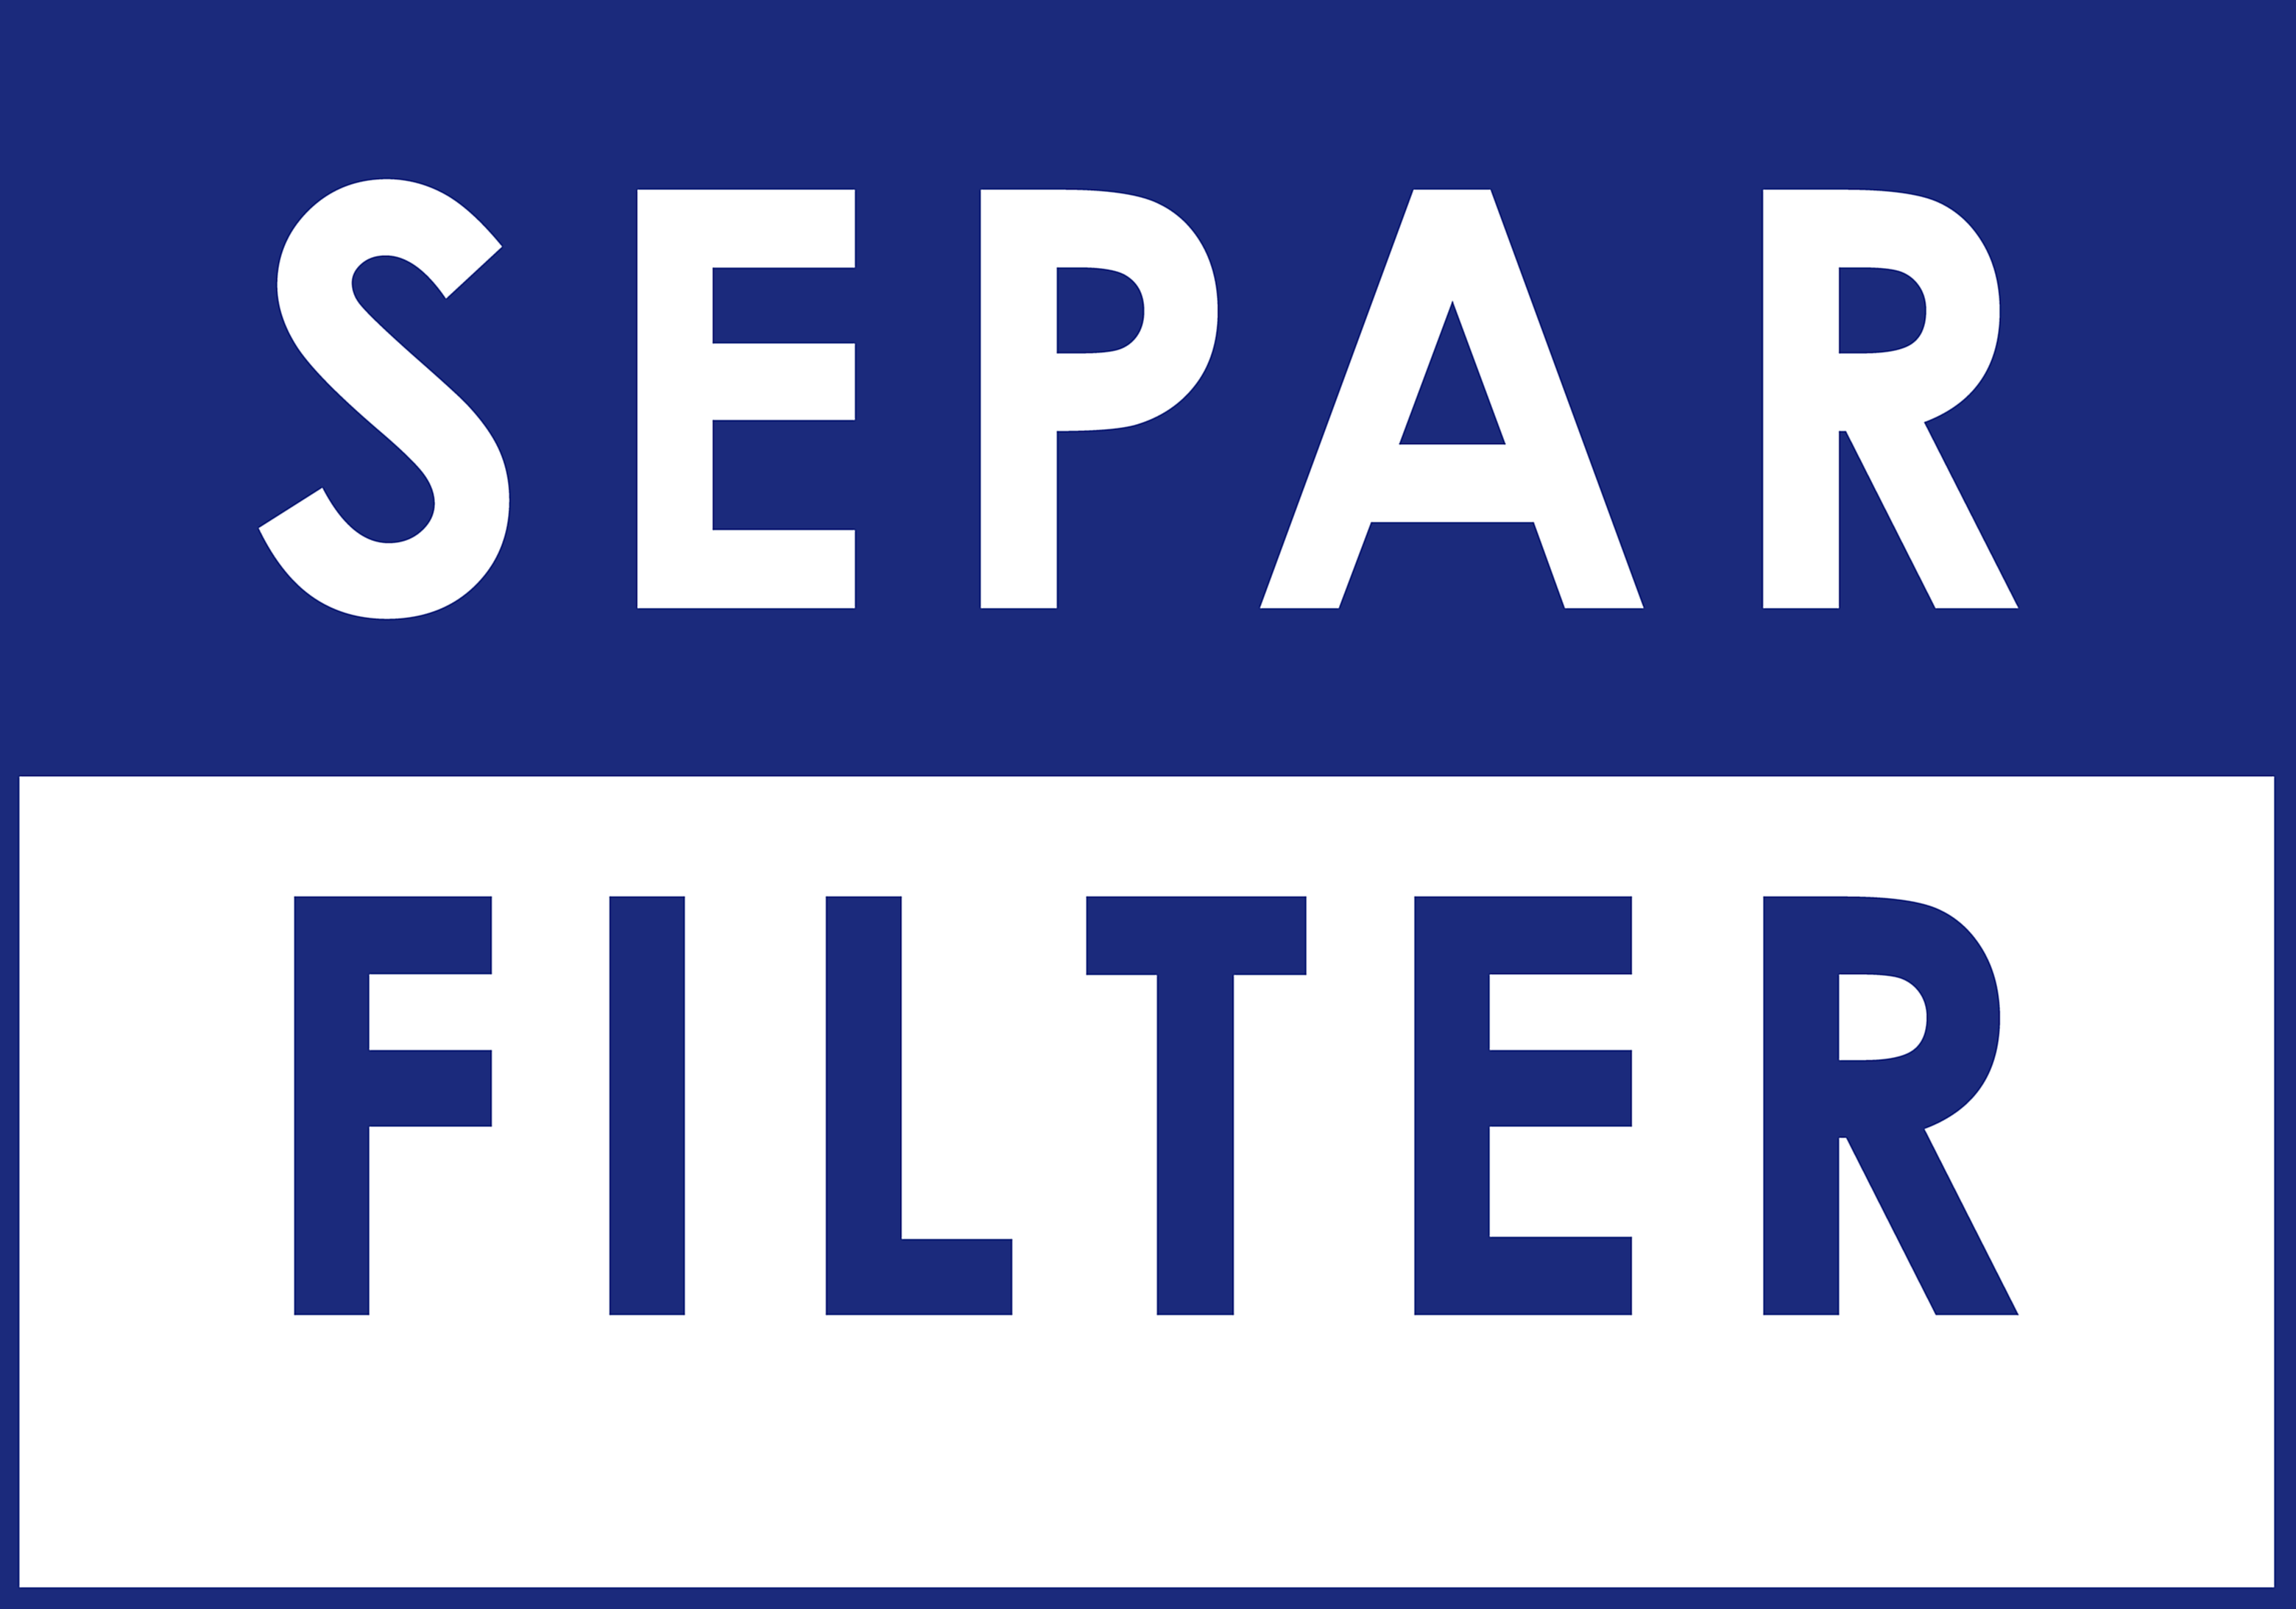 Separ Filter